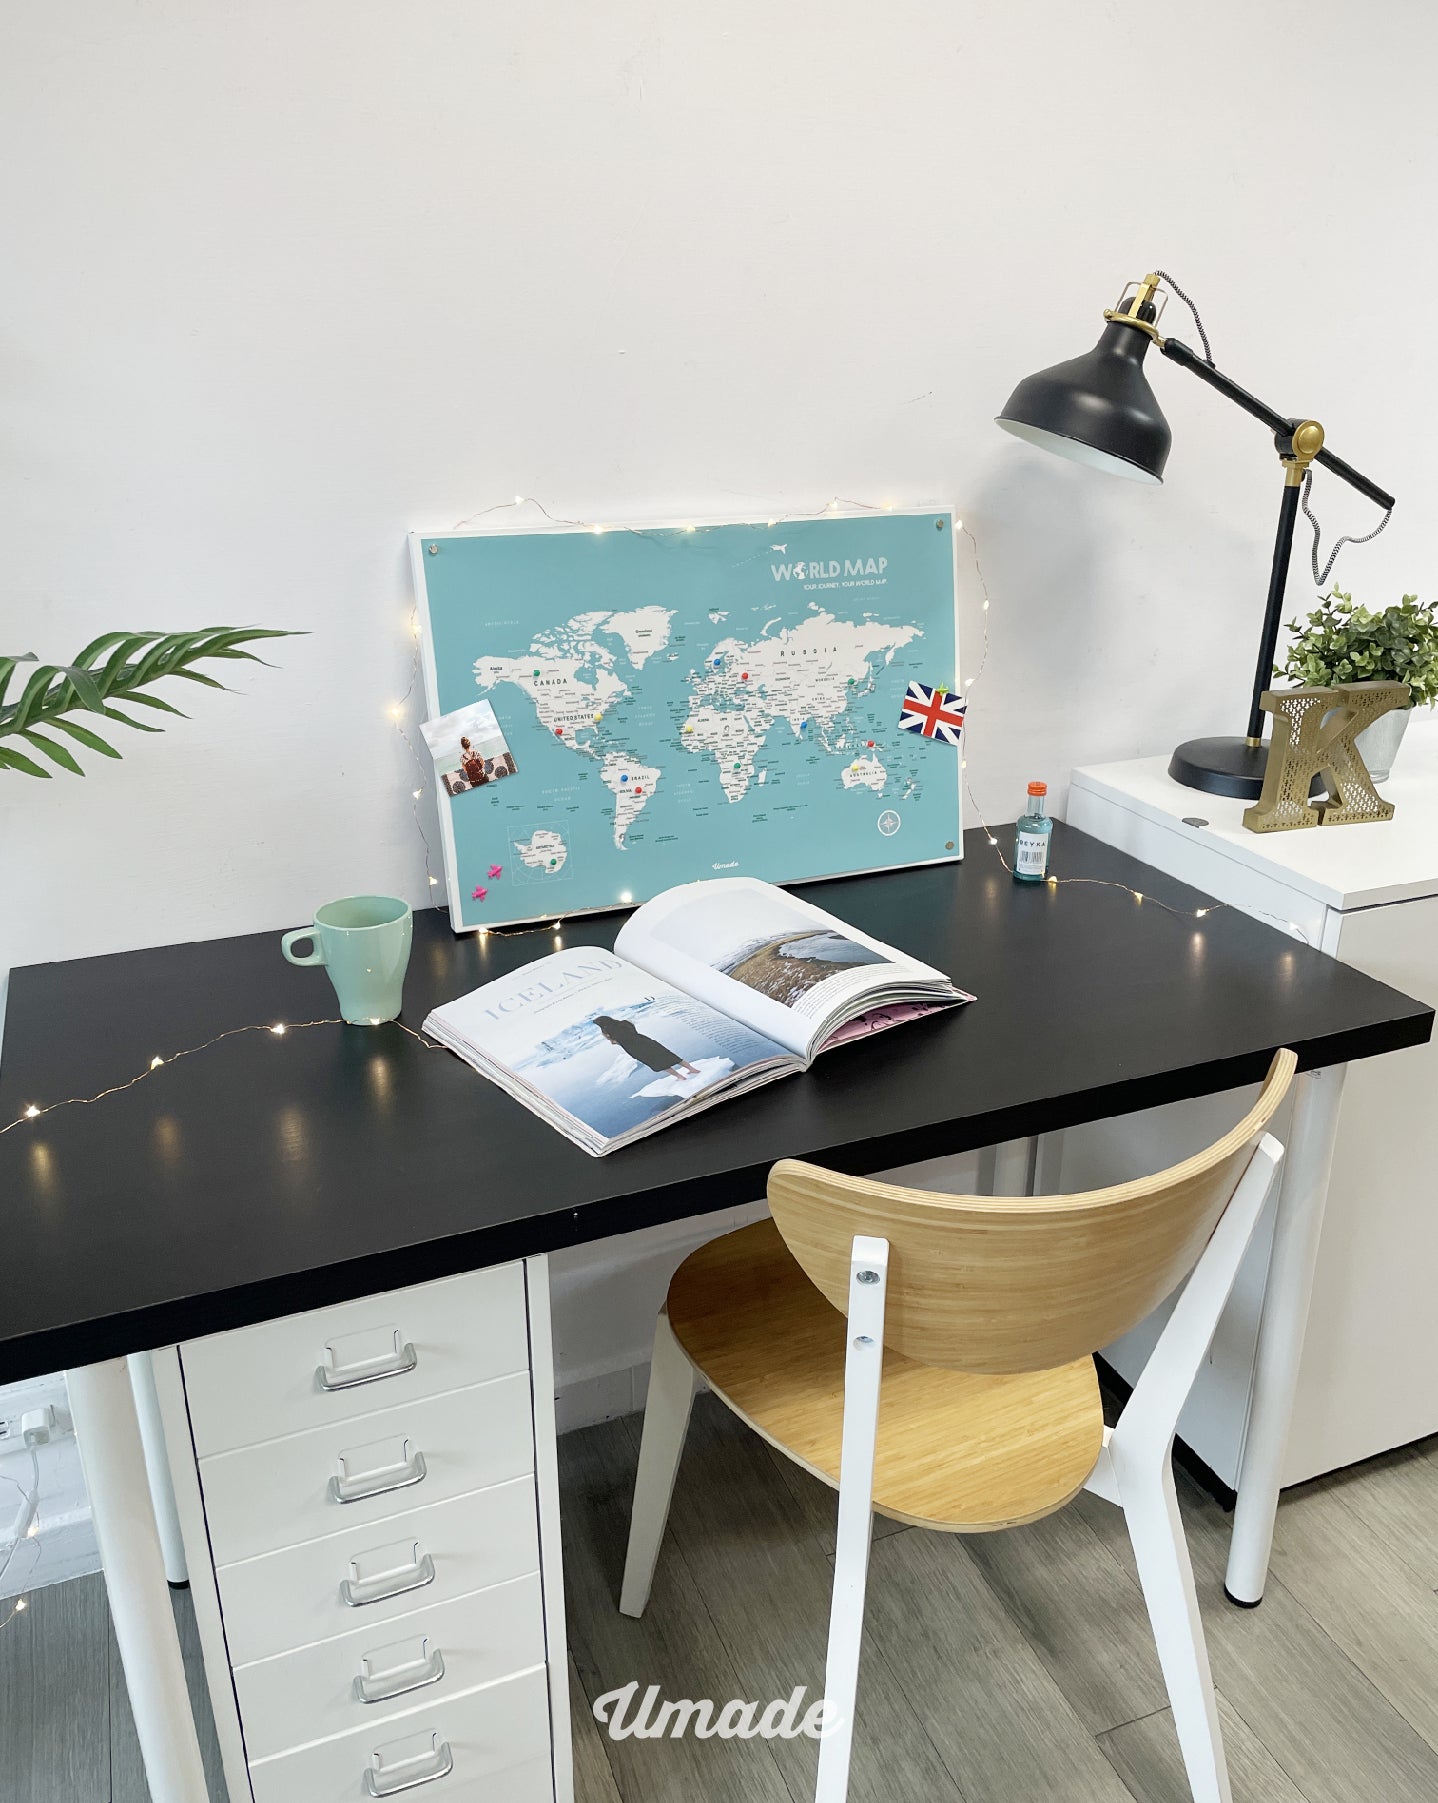 umade-UMade訂製地圖-IKEA磁吸系列-世界地圖-湖水綠-IKEA留言板-書桌擺飾-居家佈置-紀錄旅程-標記地點